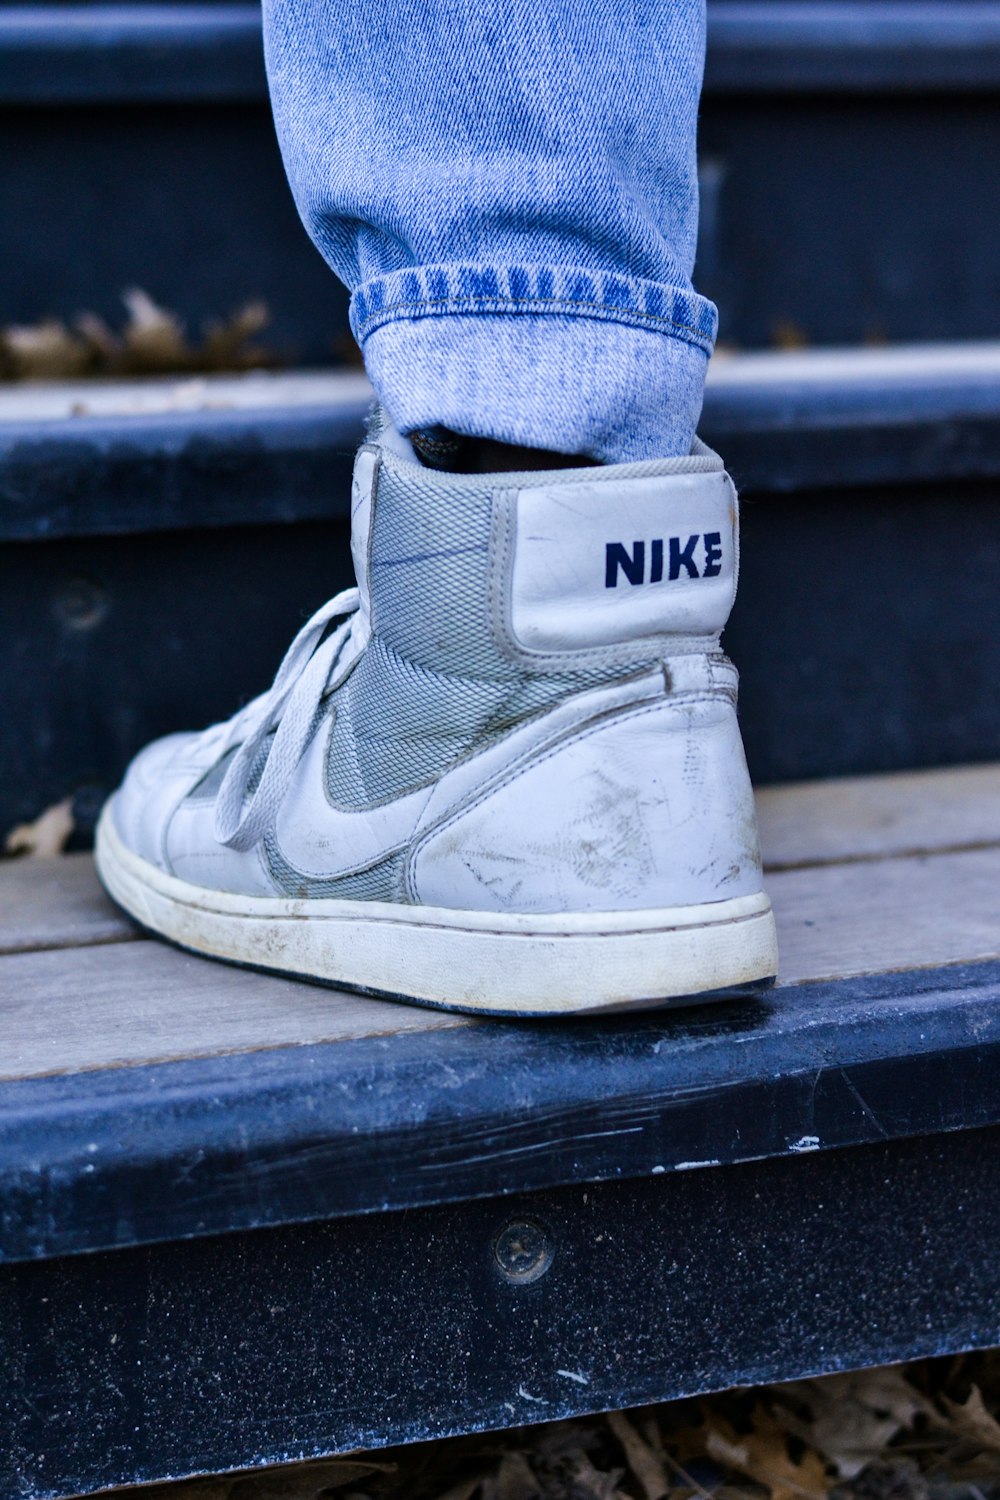 pessoa usando tênis Nike branco e cinza